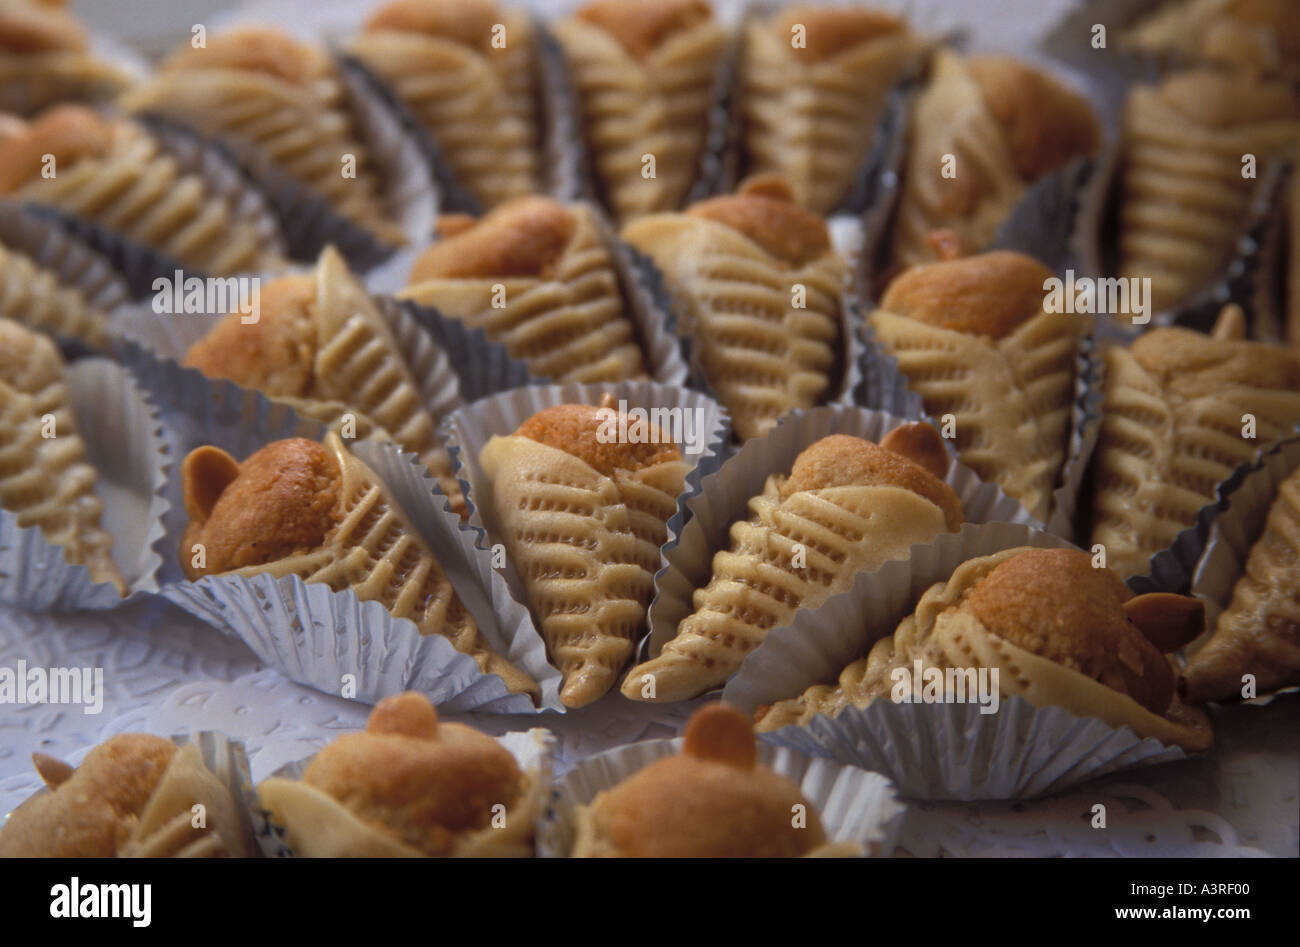 Dessert algerino immagini e fotografie stock ad alta risoluzione - Alamy